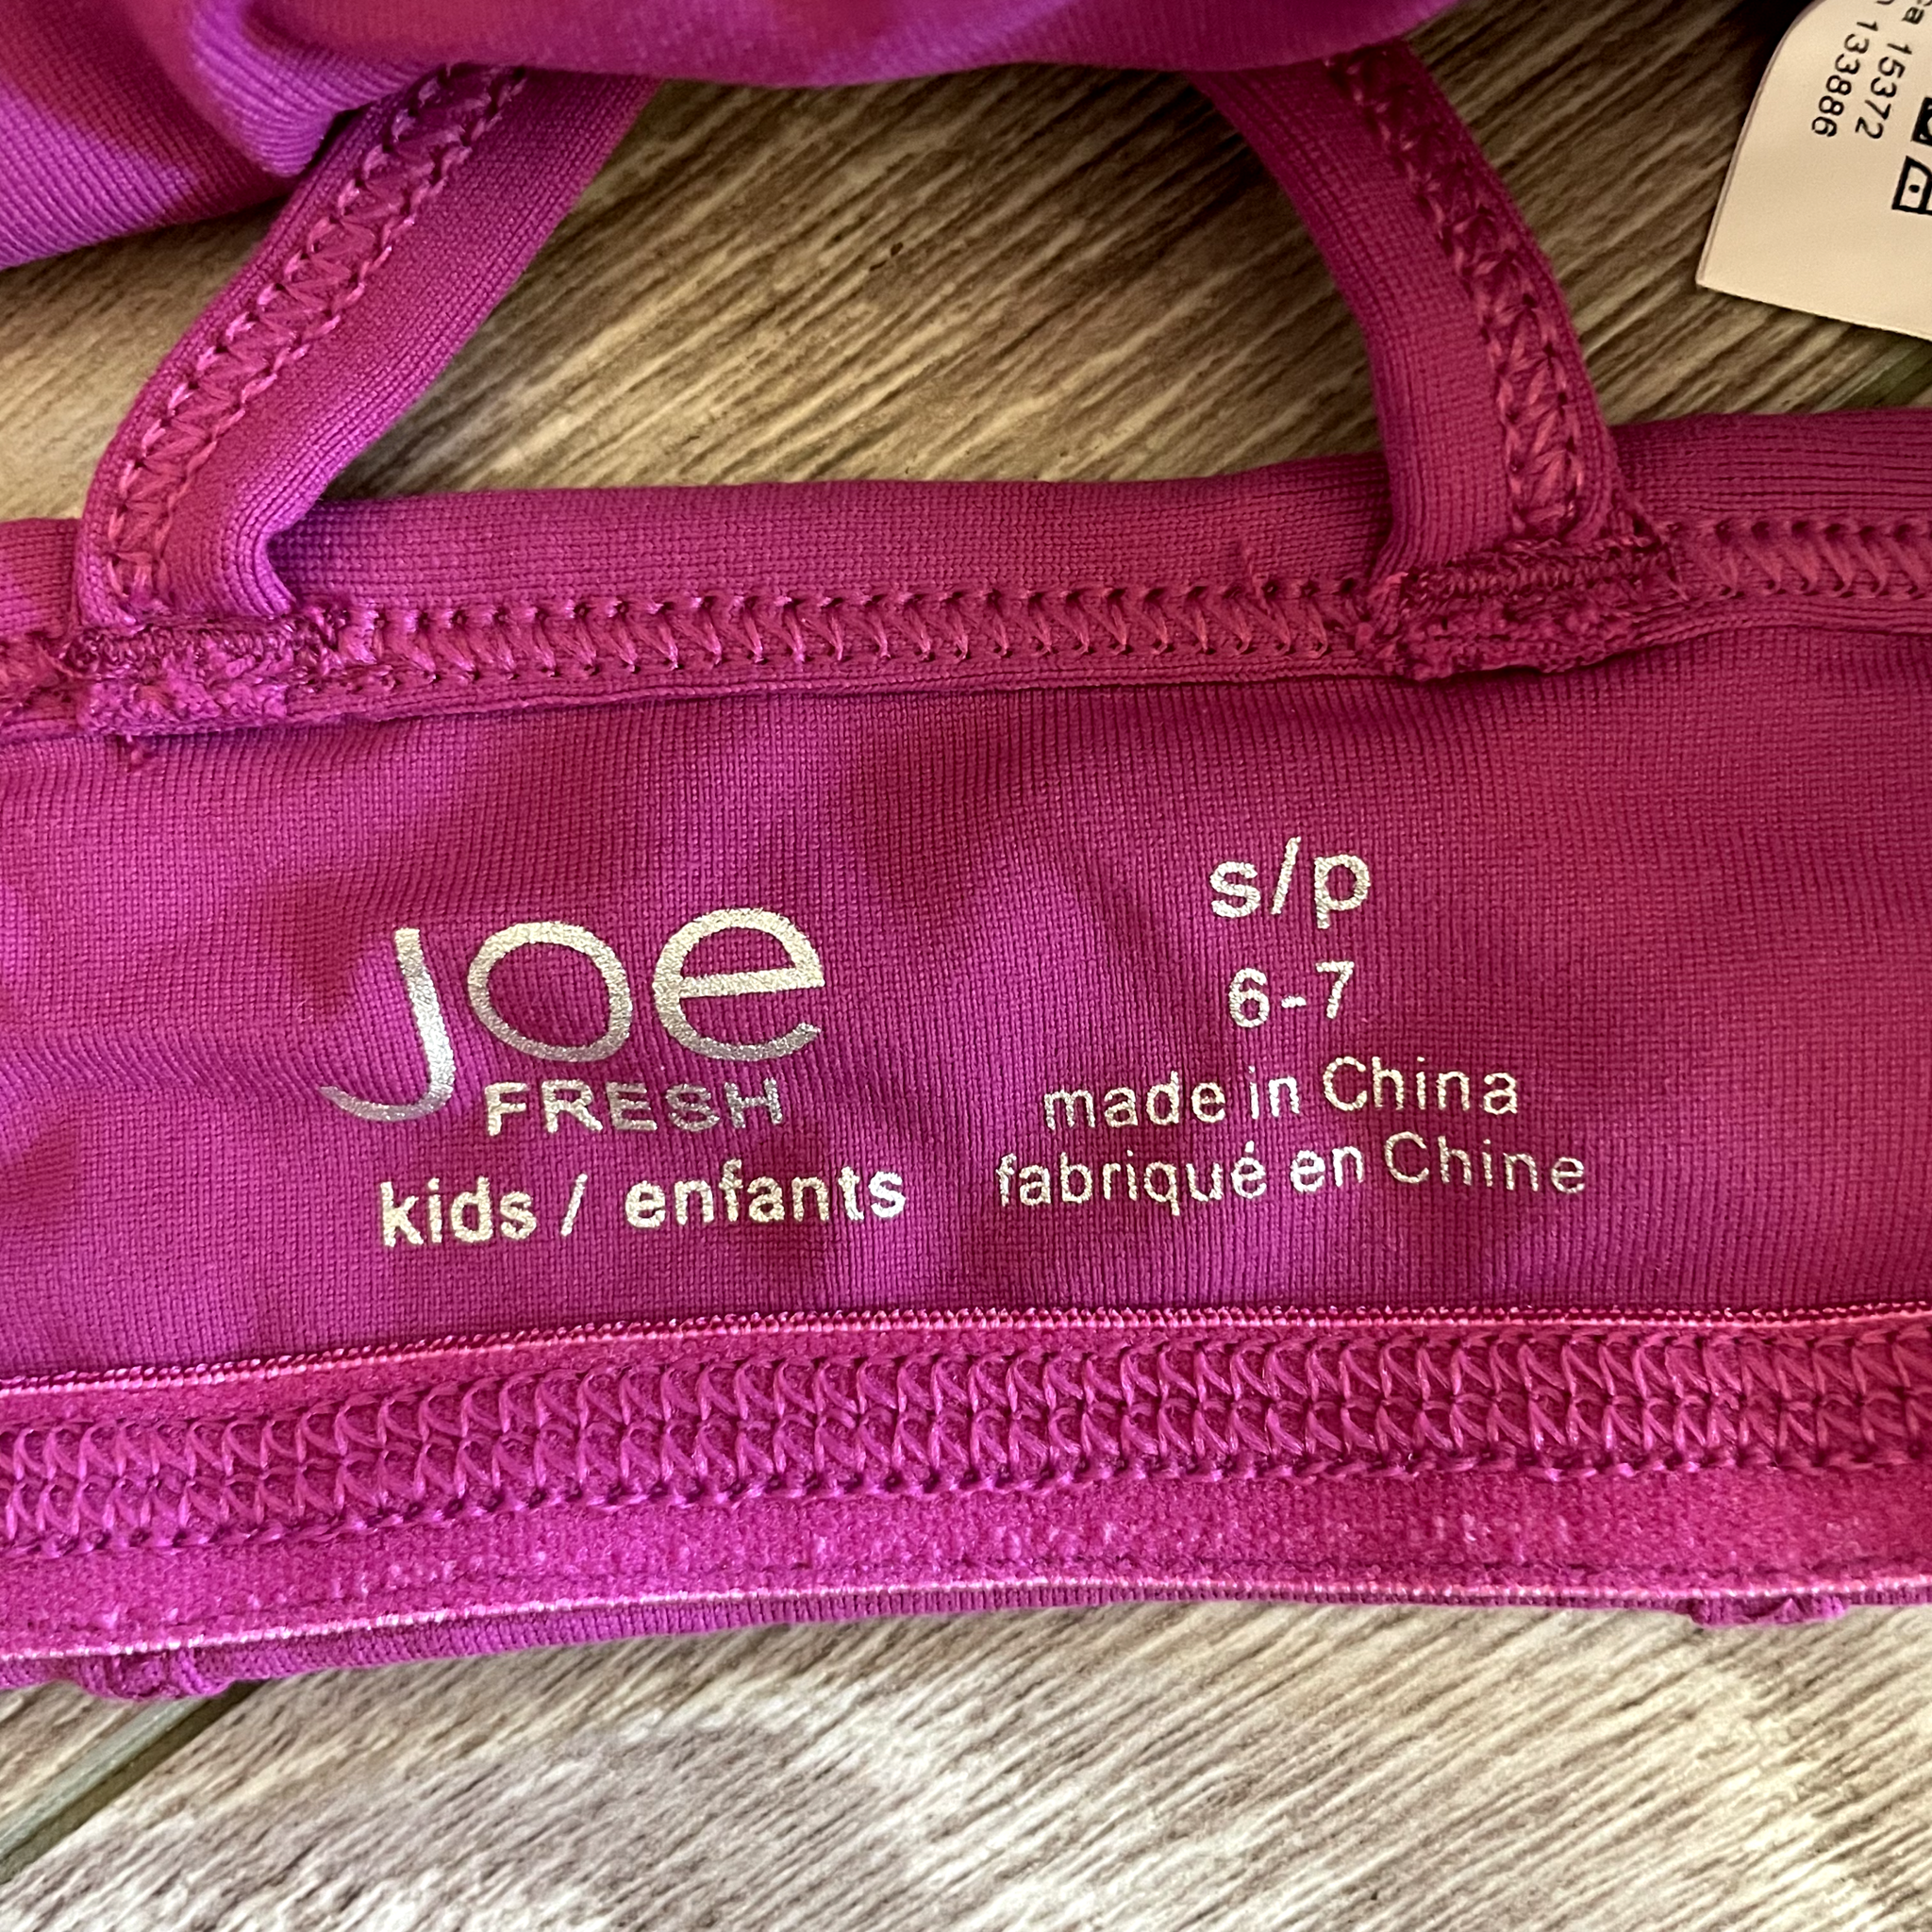 Joe Fresh, Cherry Pink Sports Bra, CS 6/7 – Dancewear Resale 3.0